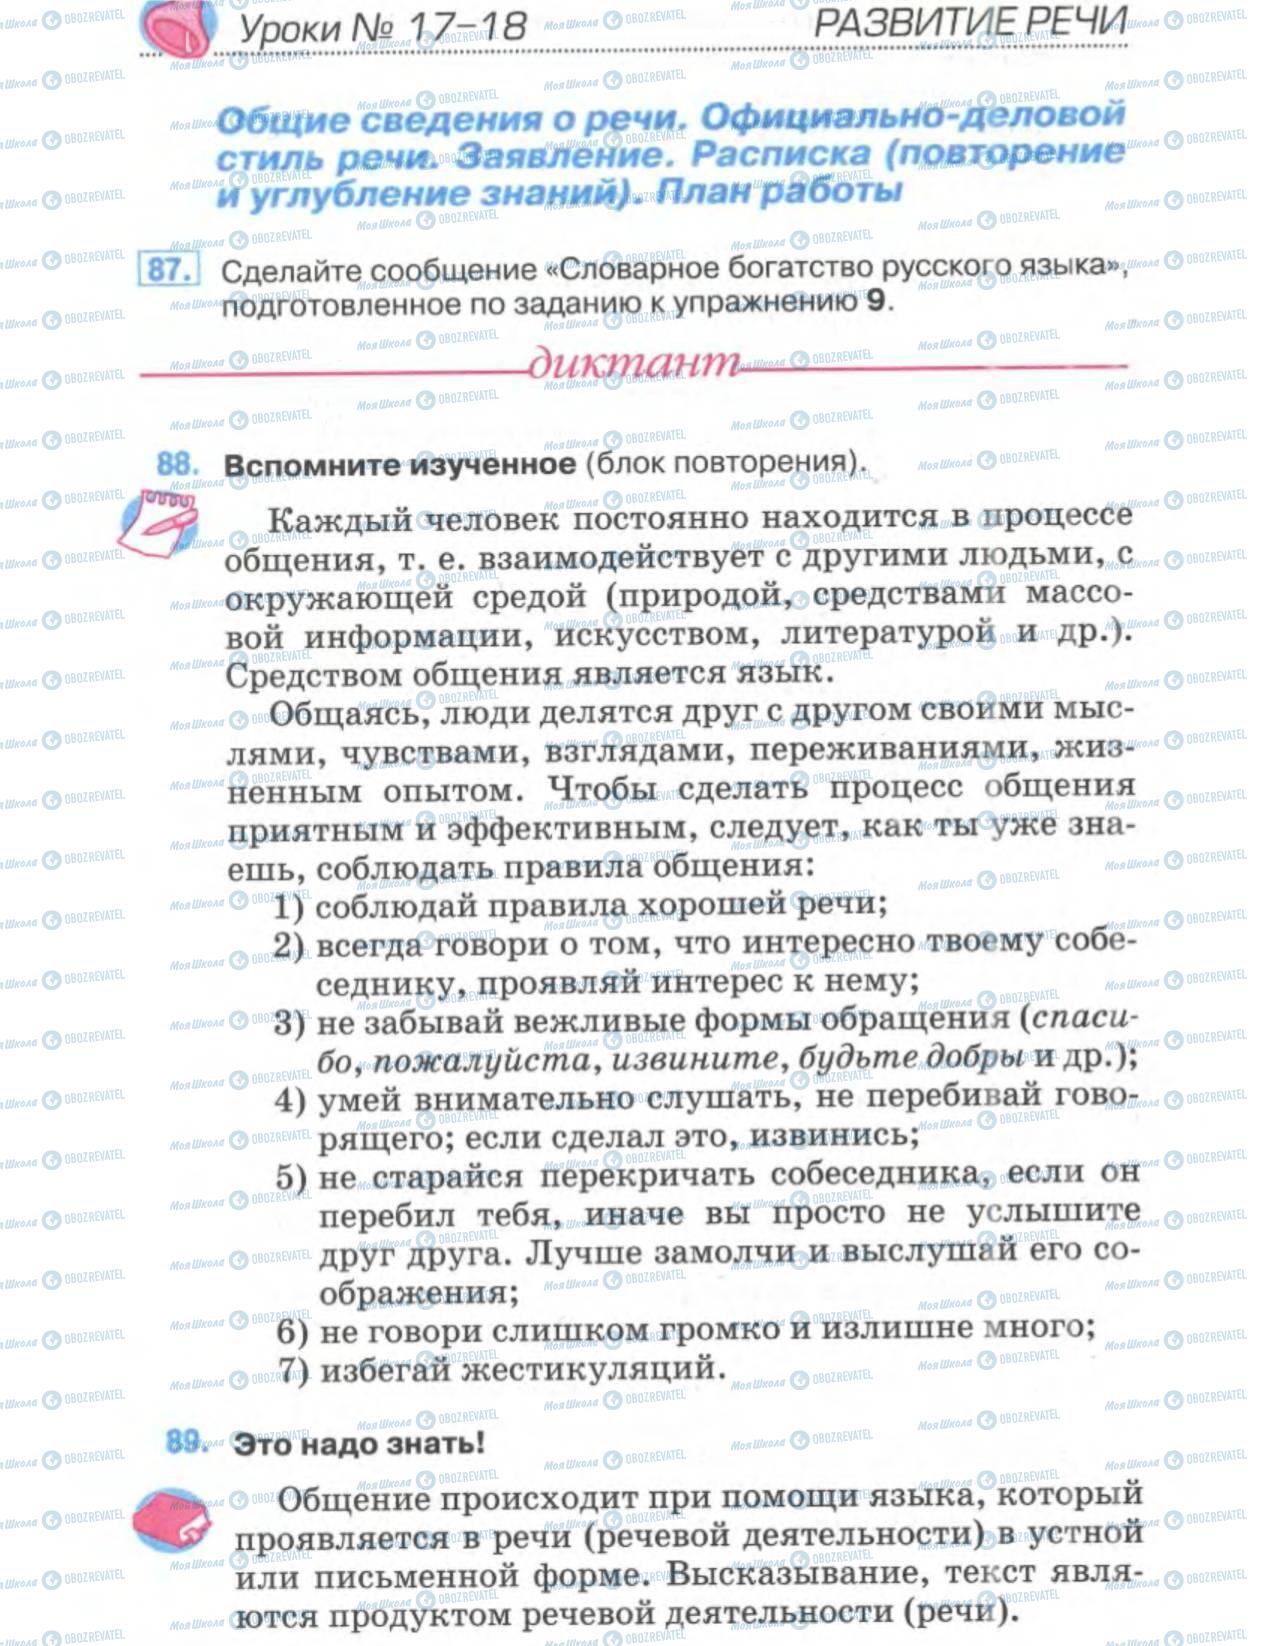 Підручники Російська мова 6 клас сторінка 46